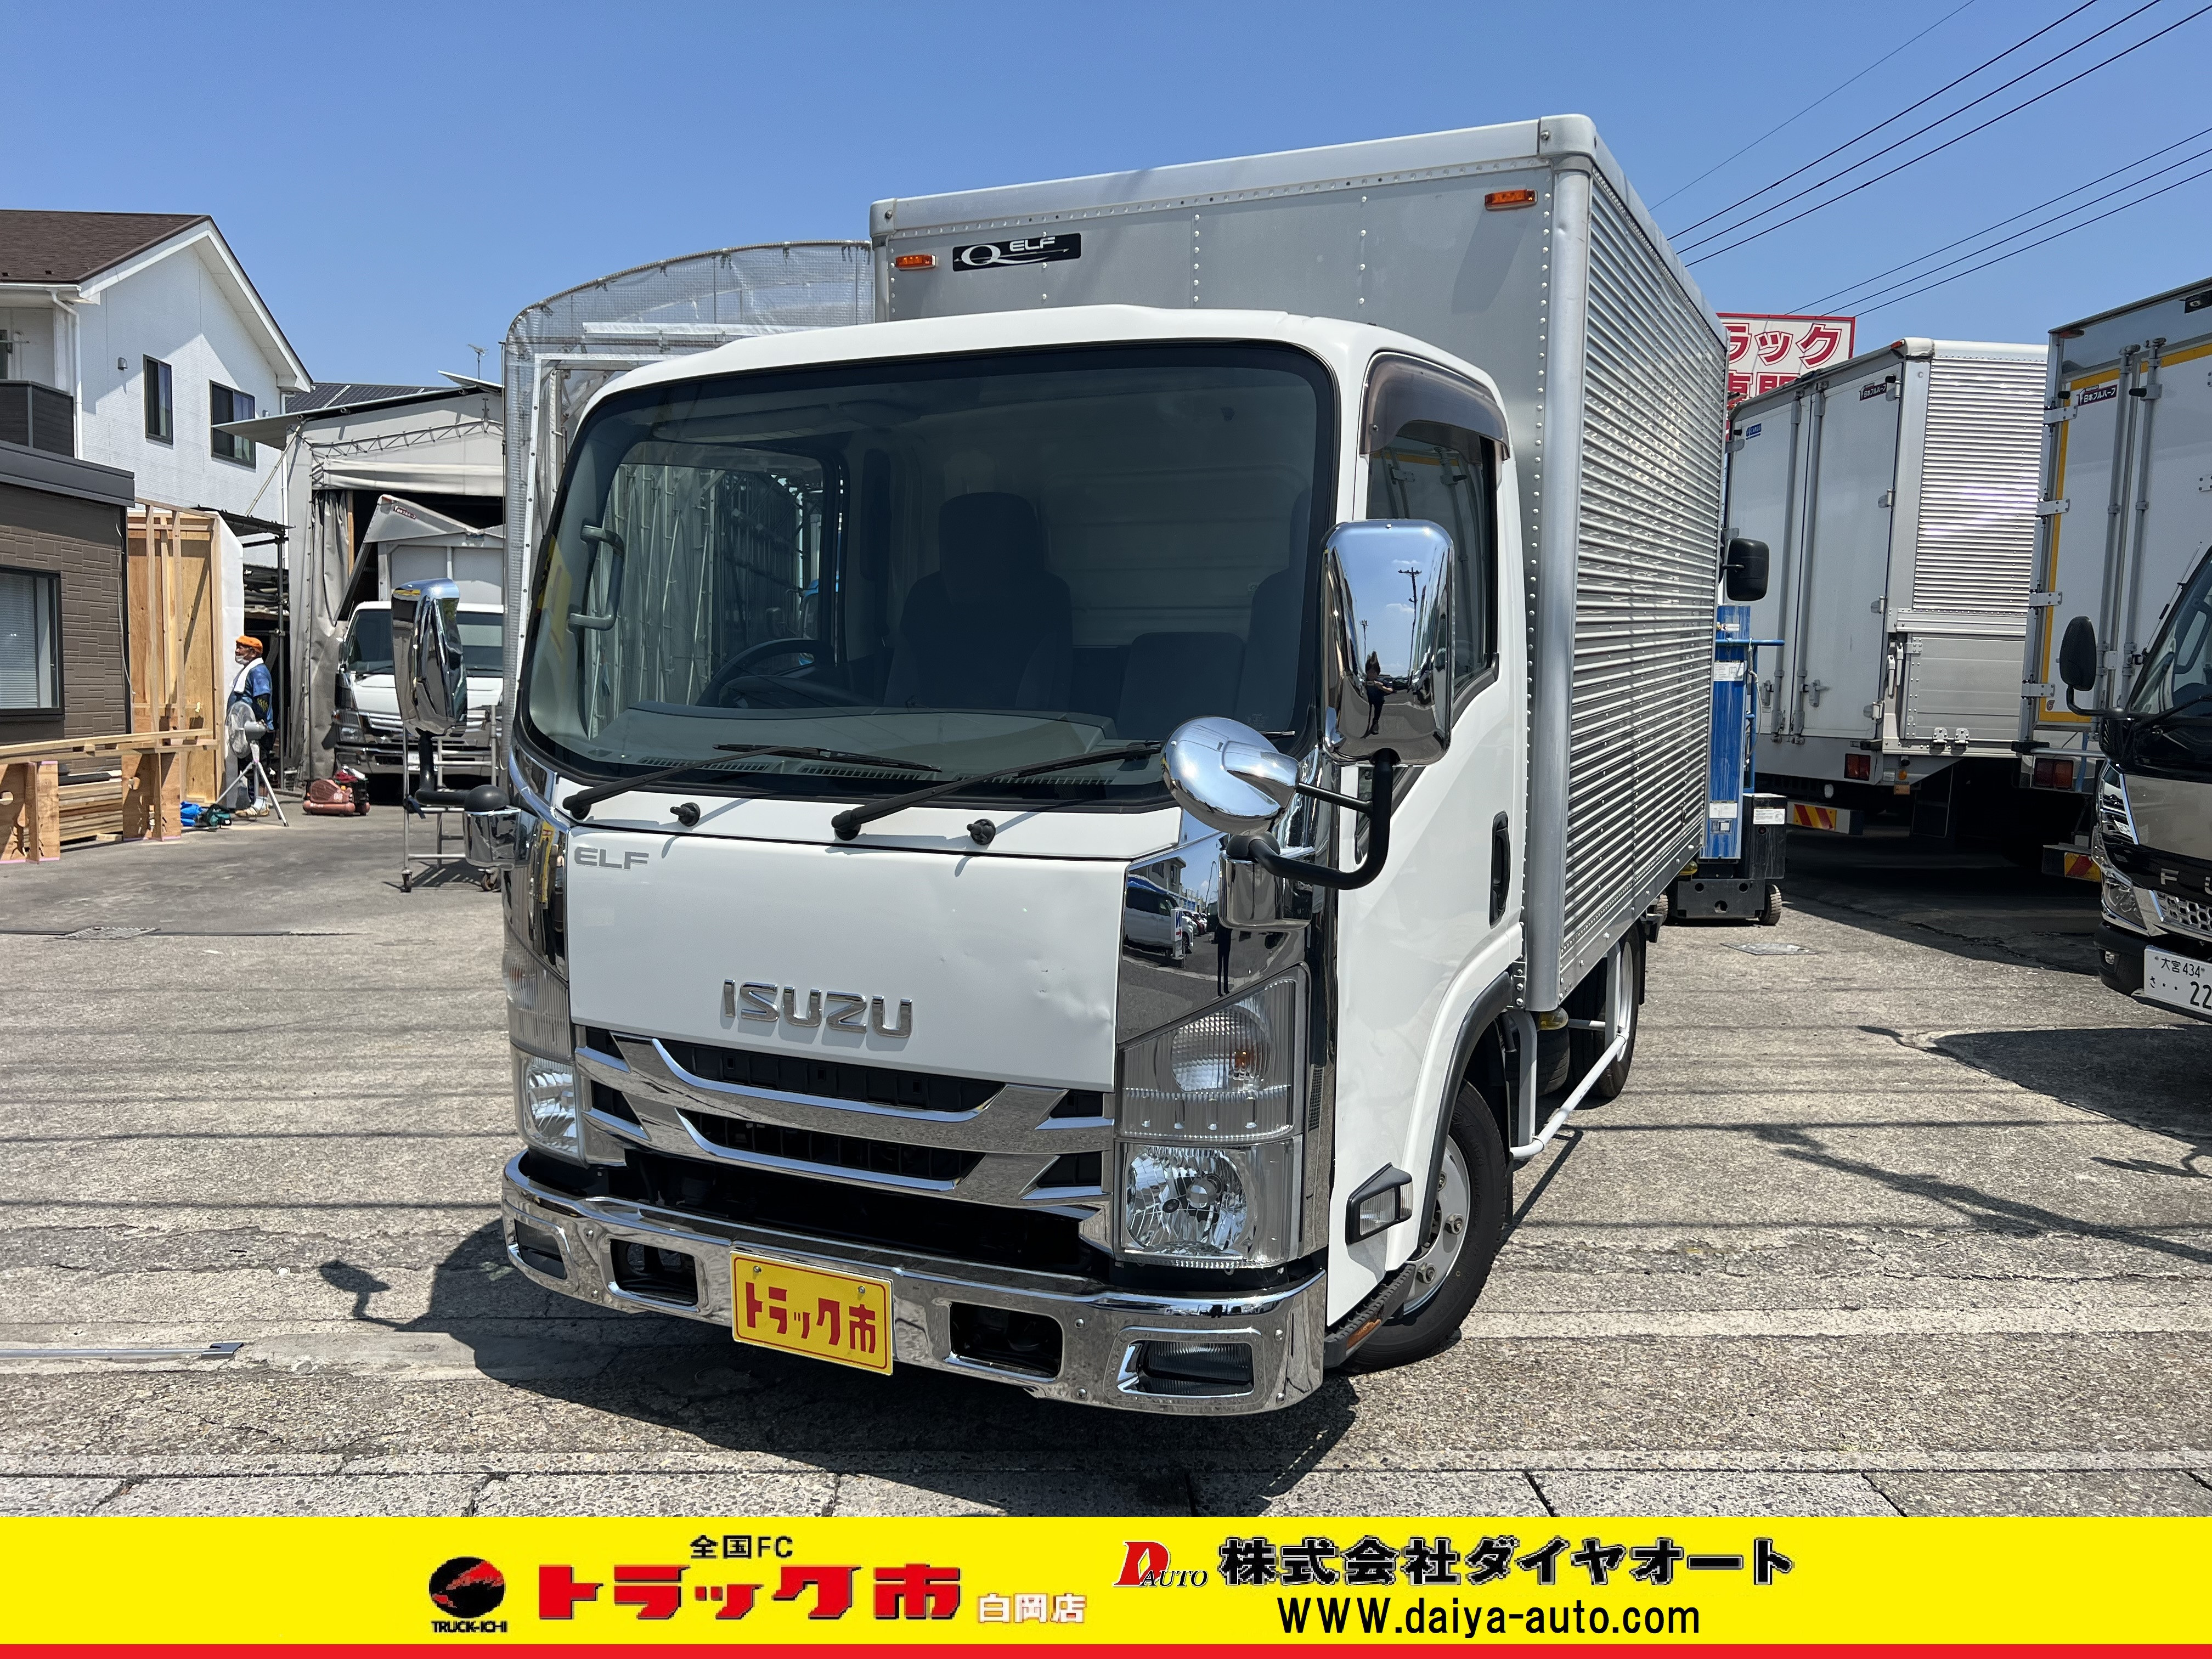 大型コンテナトラック/日通/ISUZU/DAIYA/未使用